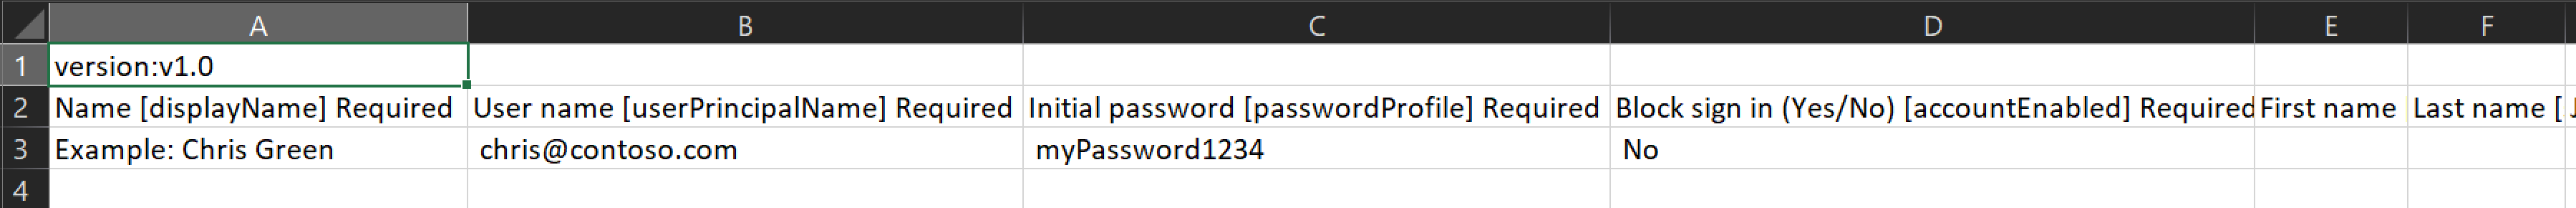 Képernyőkép a létrehozandó felhasználók nevét és azonosítóit tartalmazó CSV-fájlról.